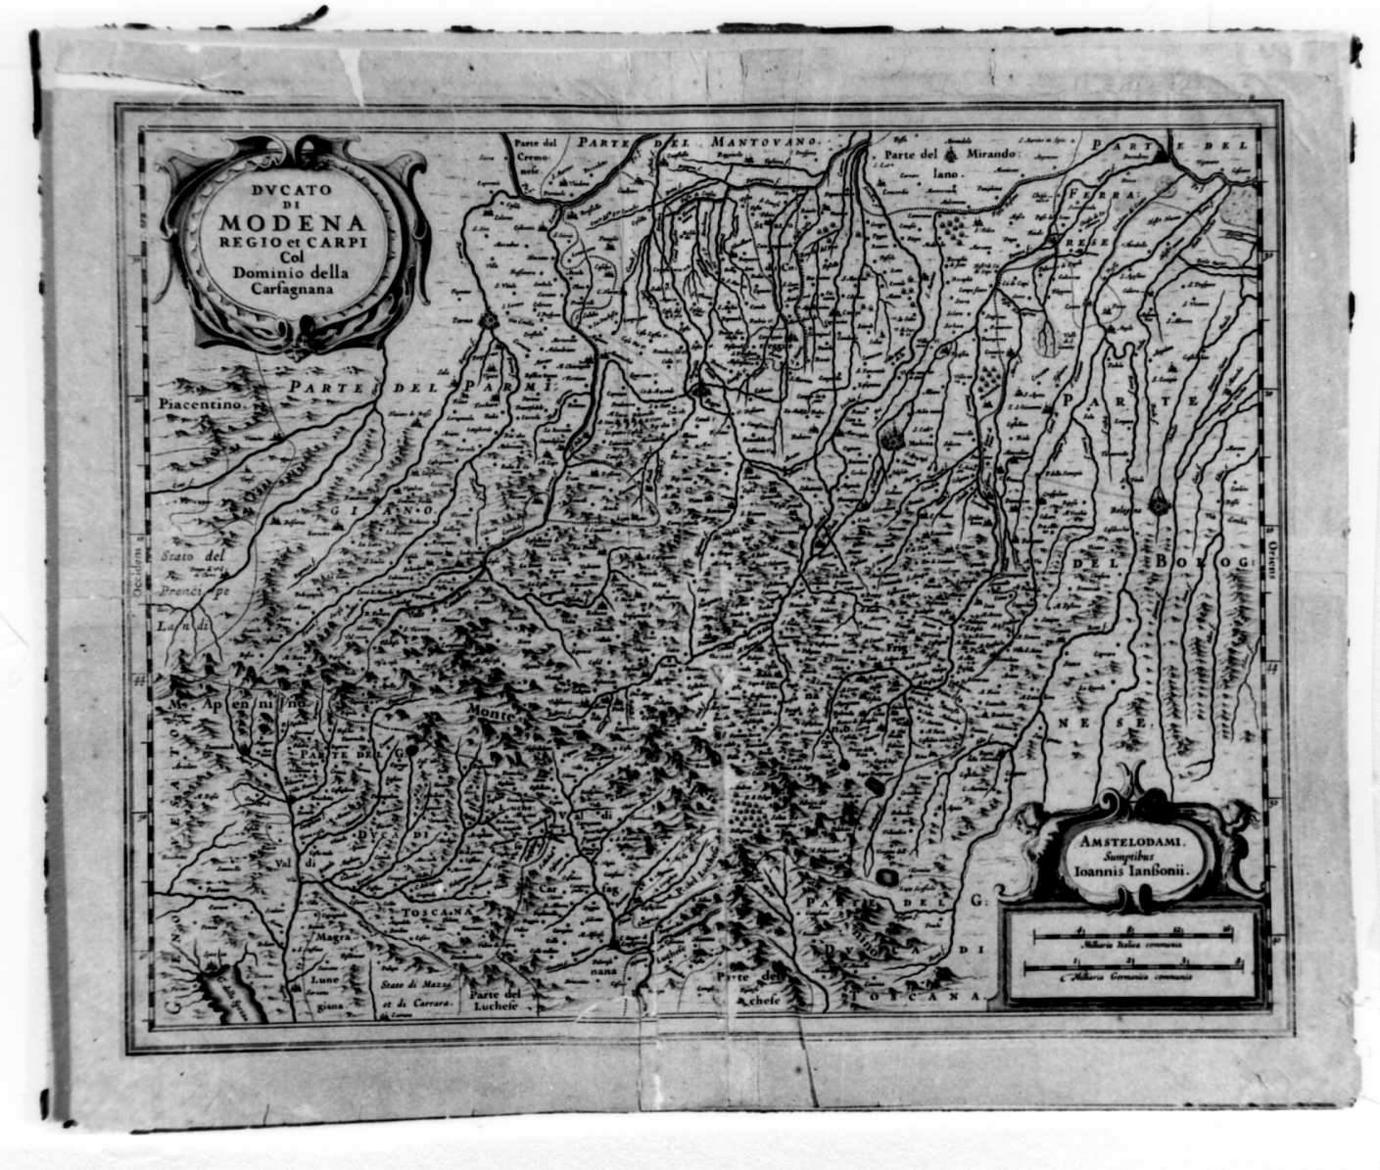 carta geografica del Ducato di Modena, Reggio Emilia, Carpi con dominio della Garfagnana (stampa) - ambito olandese (sec. XVIII)